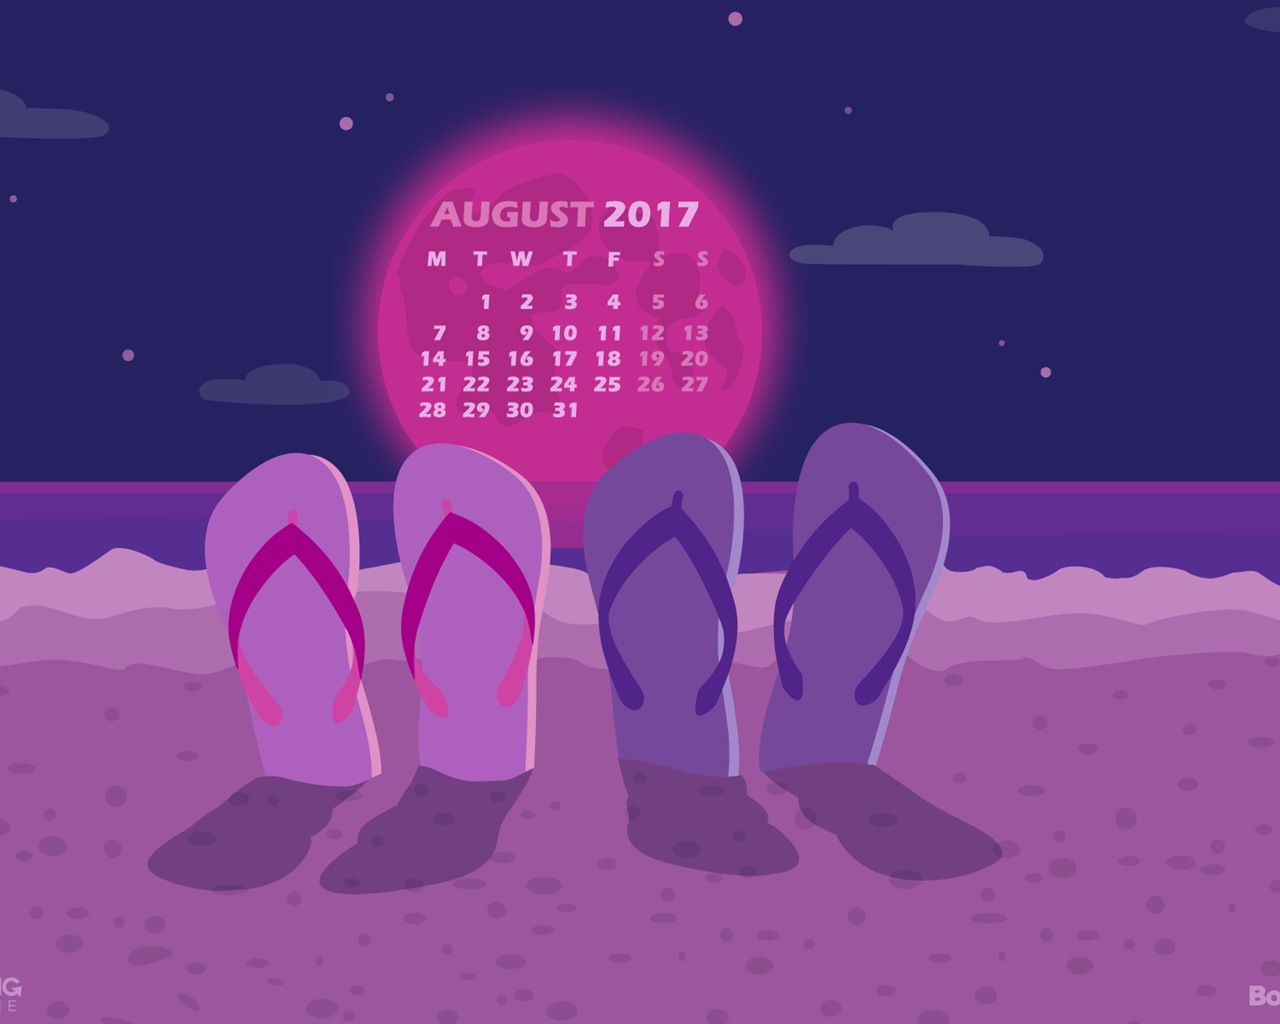 August 2017 calendar wallpaper #23 - 1280x1024